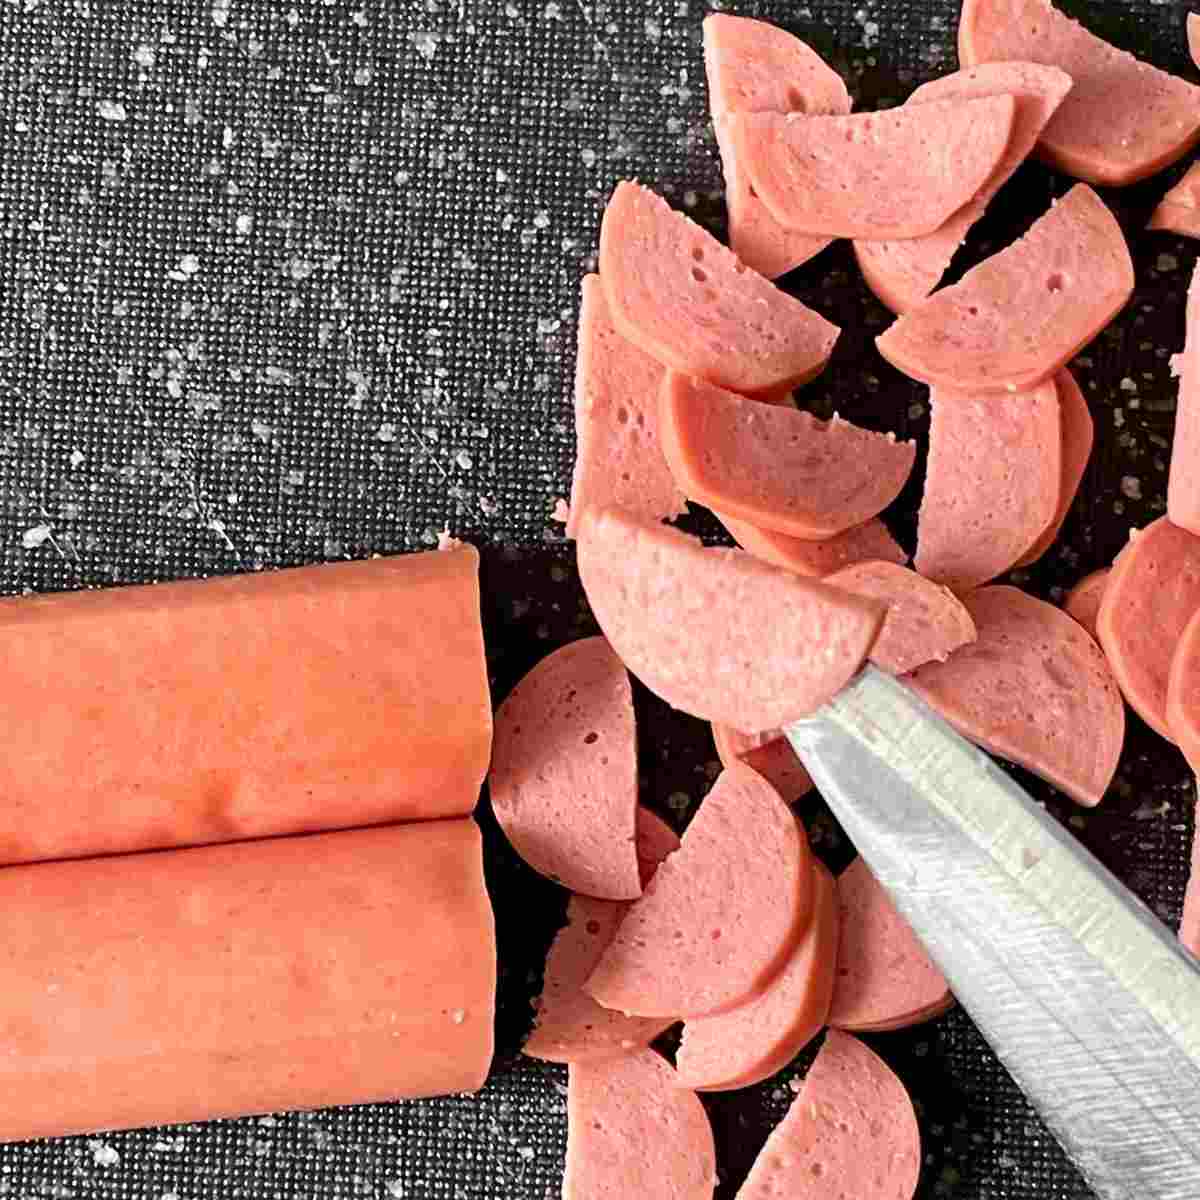 Slice sausage to thin pieces